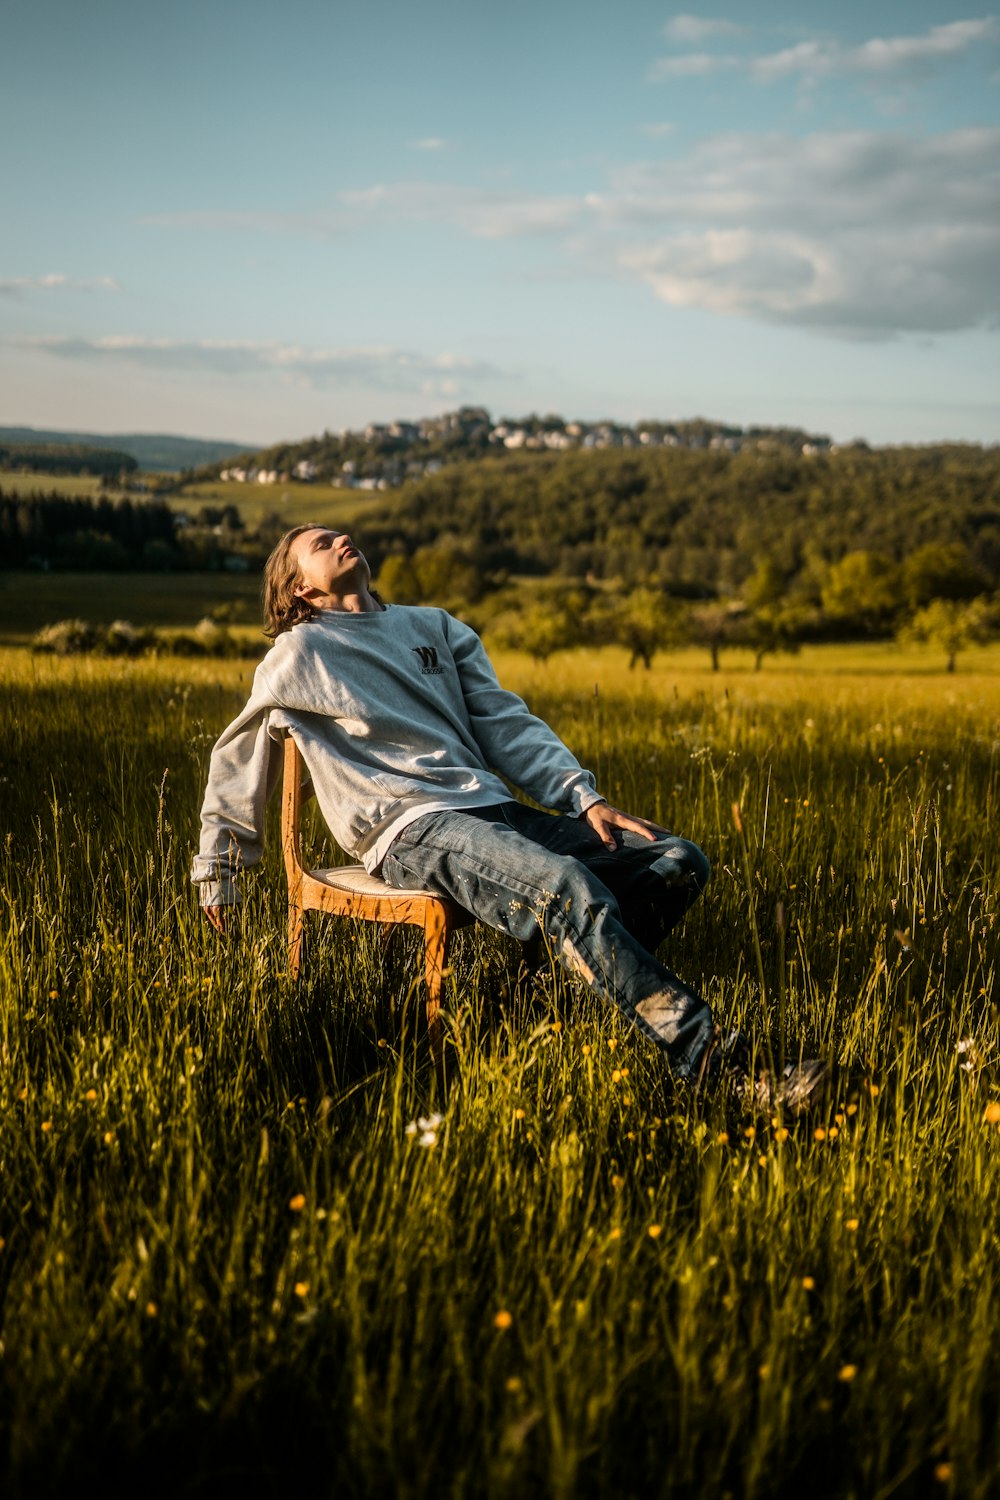 회색 후드티를 입은 남자가 낮에 푸른 잔디밭에 갈색 나무 의자에 앉아 있습니다.